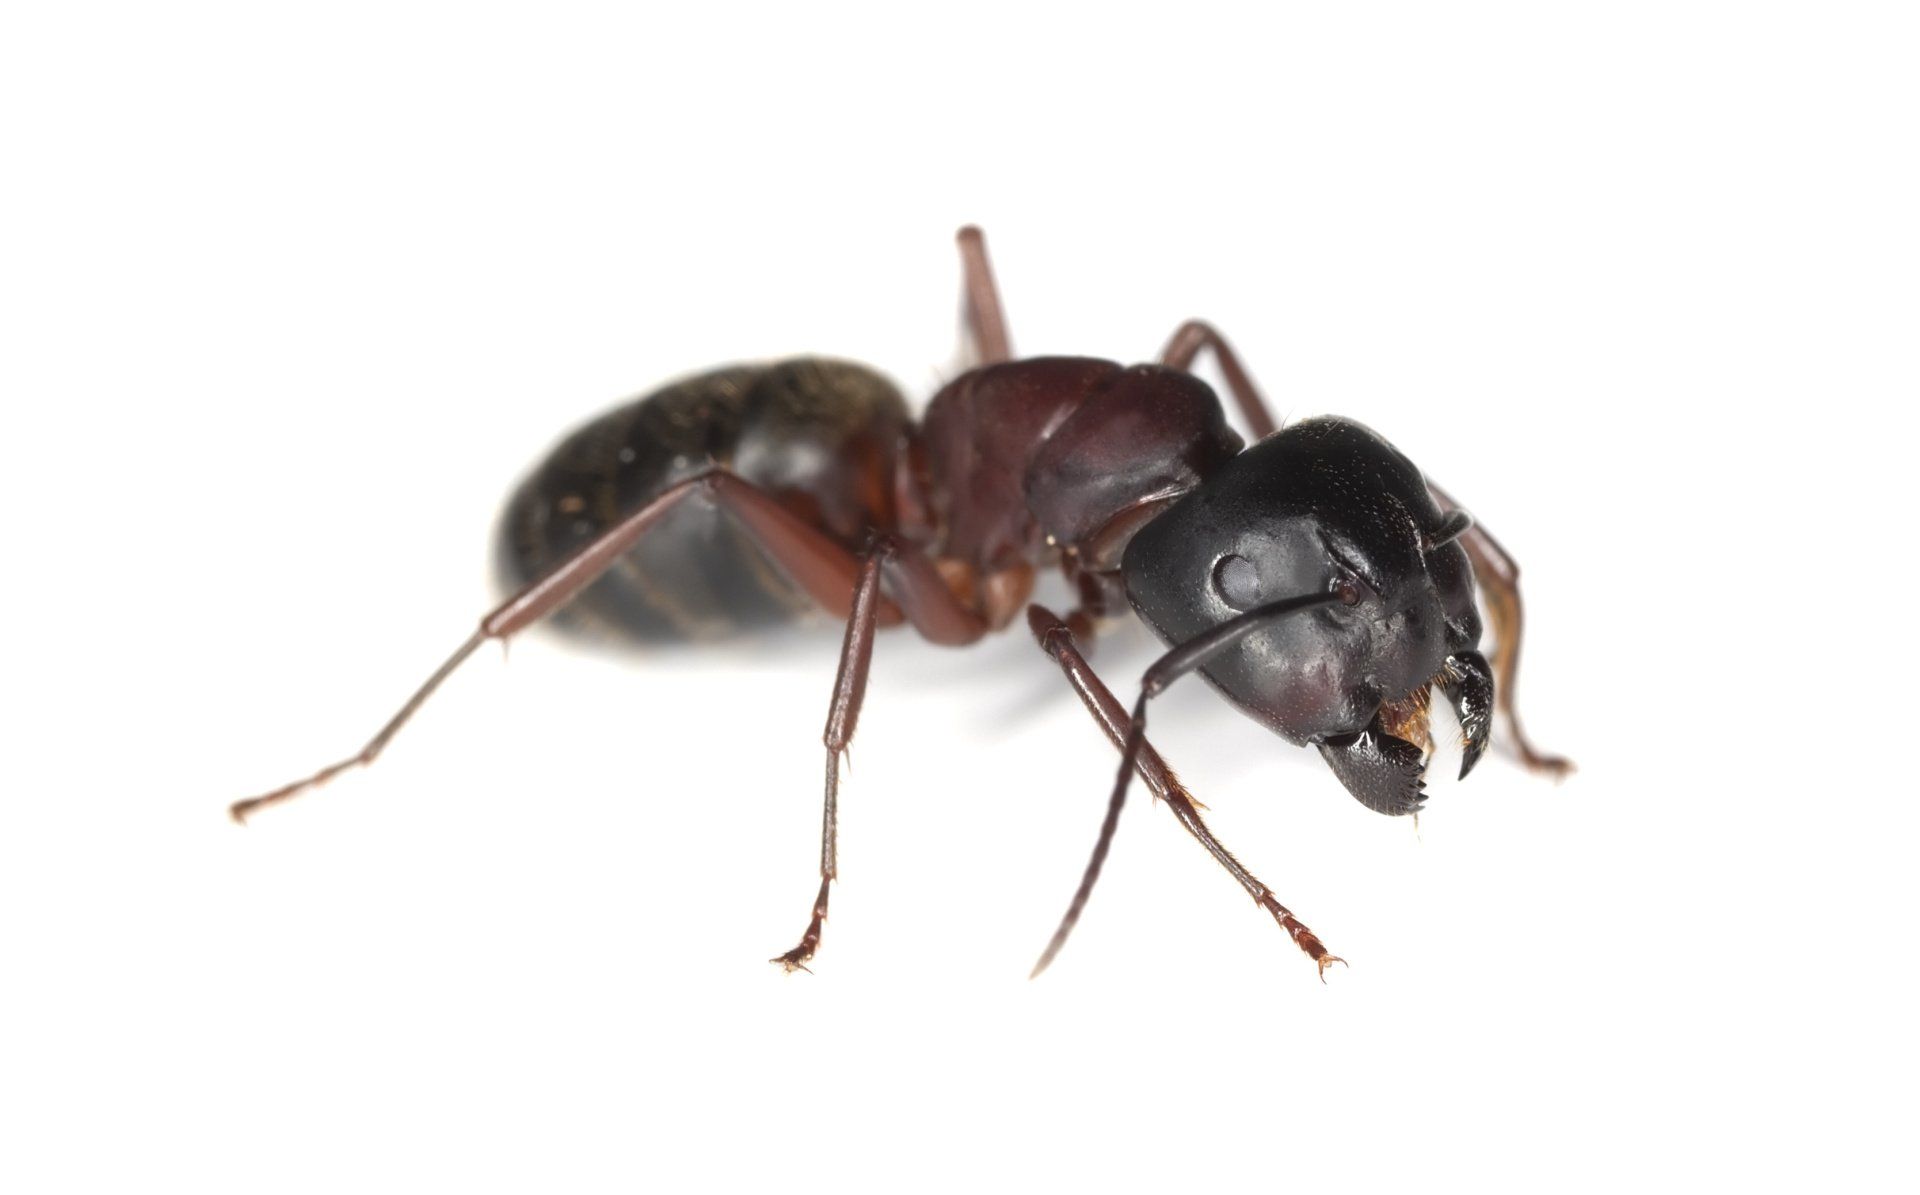 image of carpenter ant